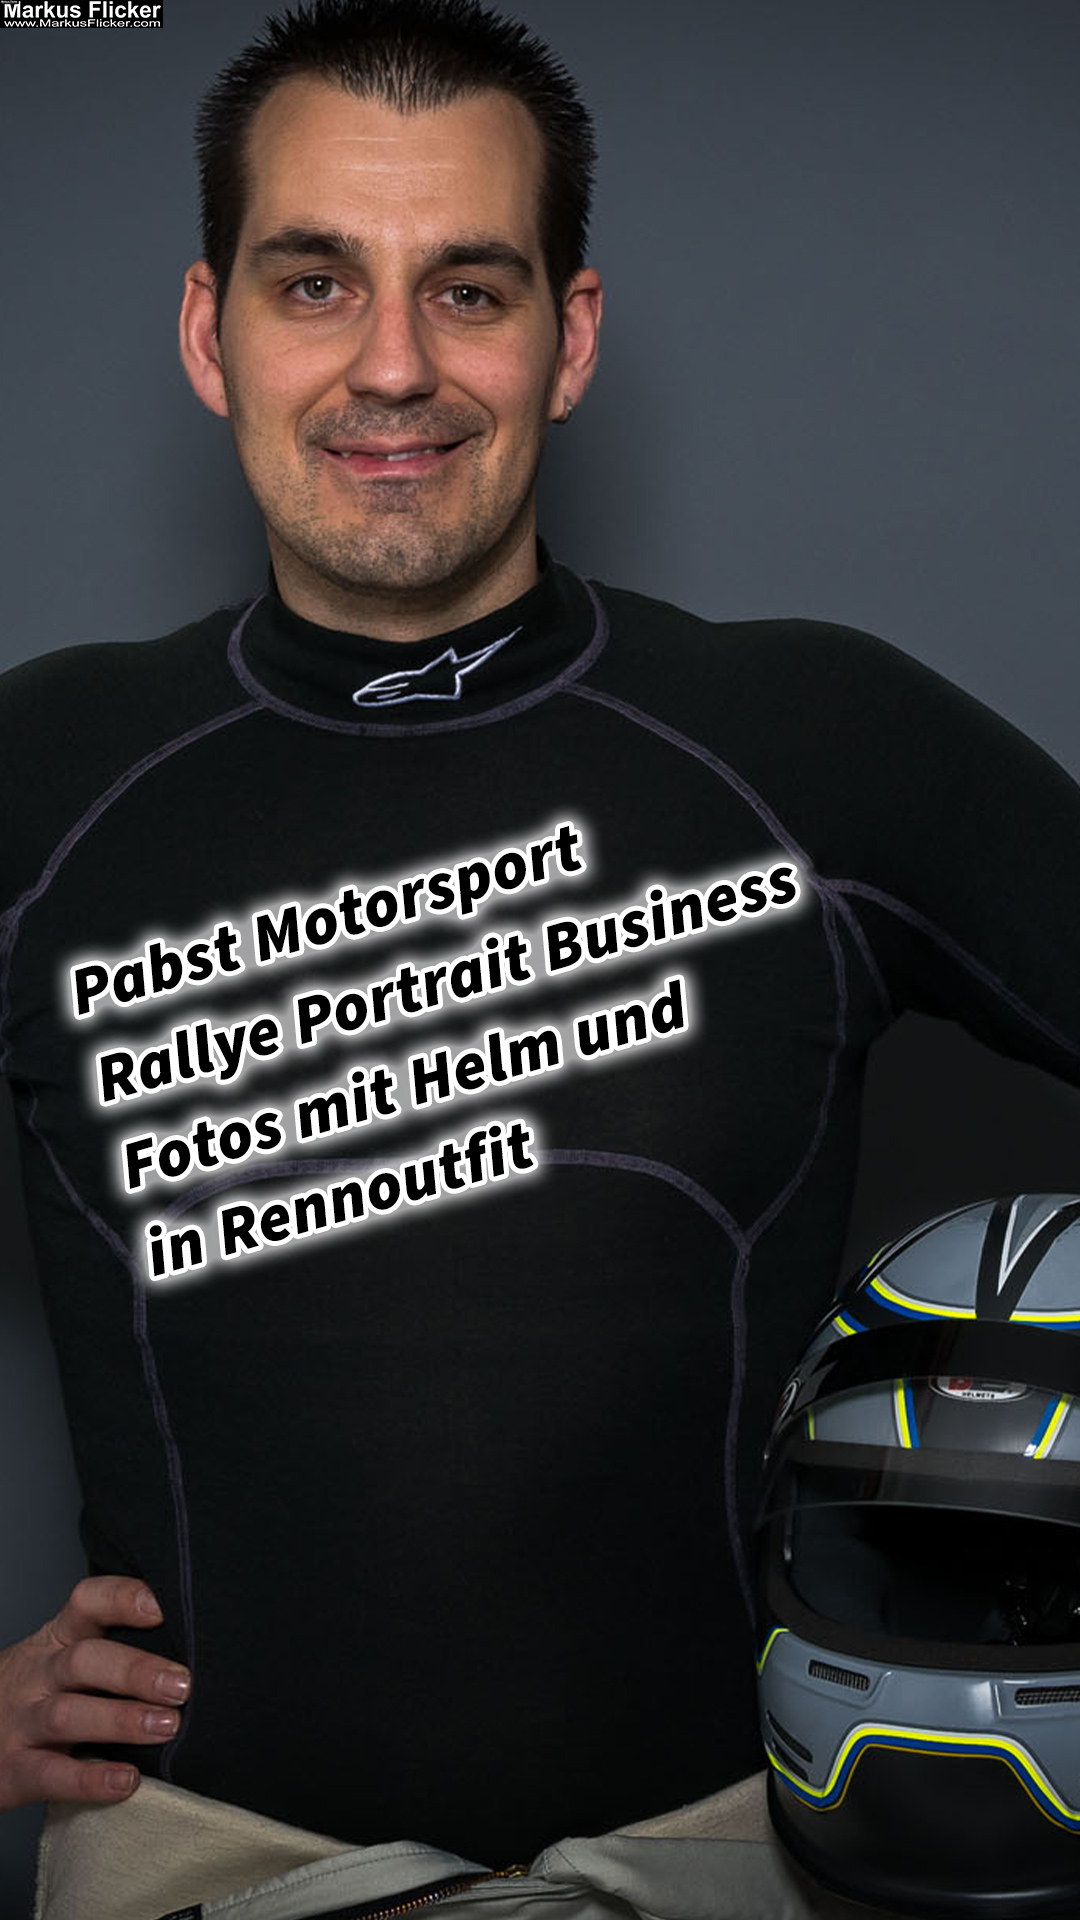 Pabst Motorsport Rallye Portrait Business Fotos mit Helm und in Rennoutfit